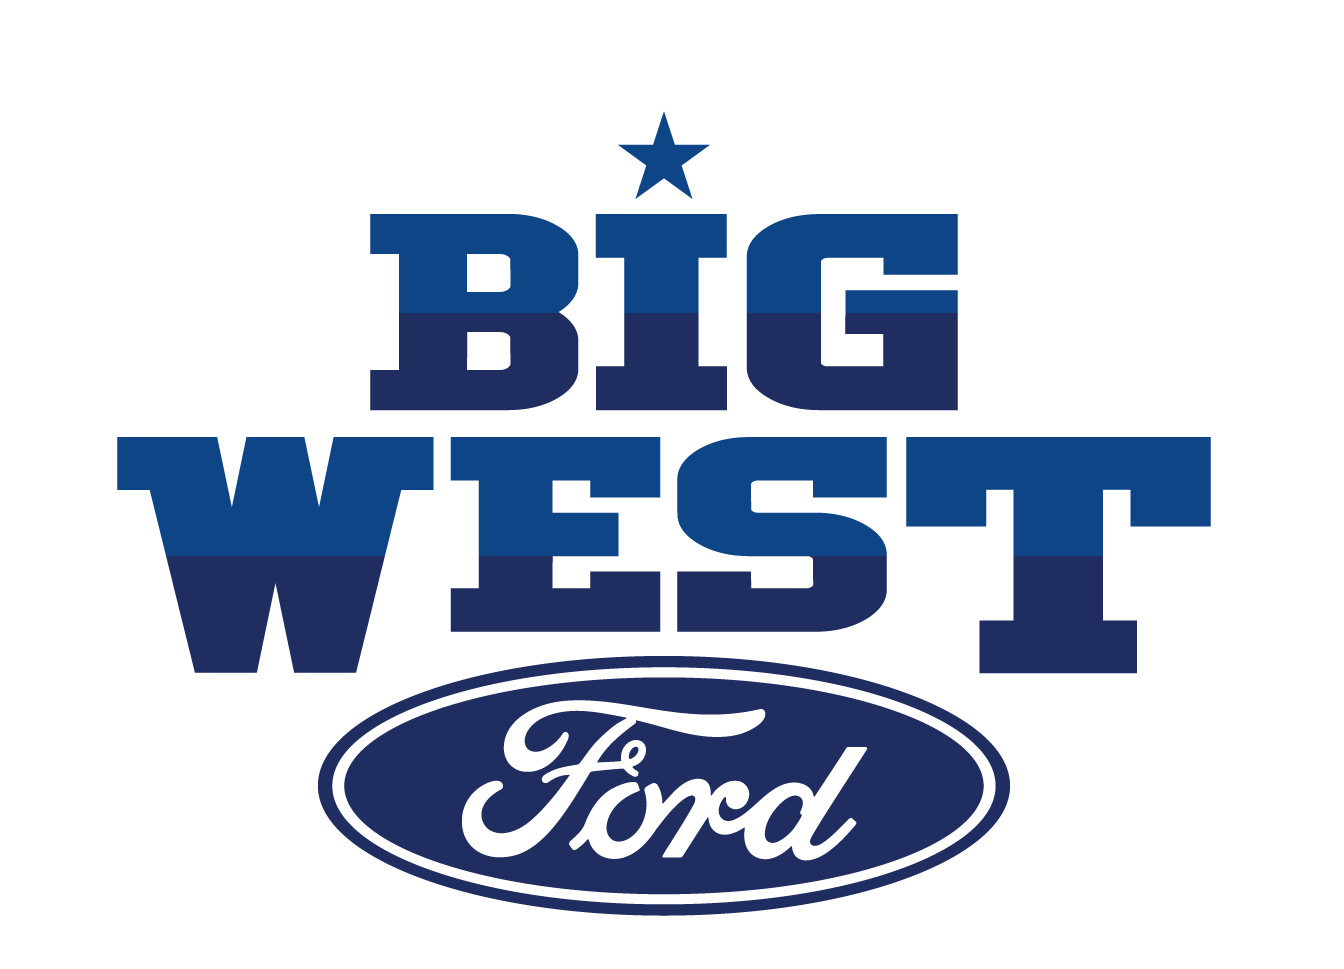 Big West Ford